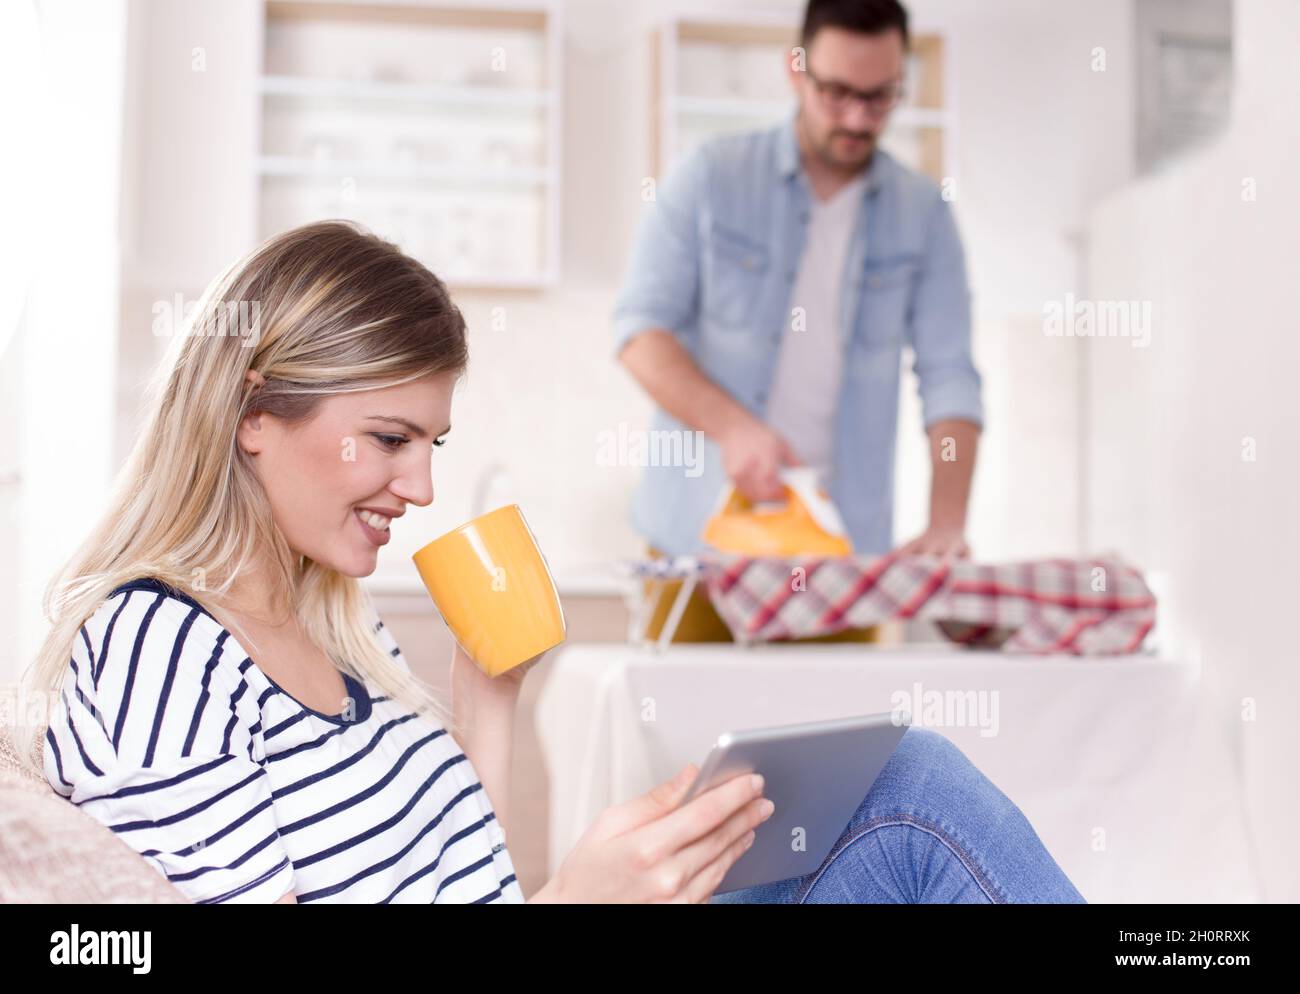 Schöne junge Frau, die sich auf dem Sofa ausruht und auf das Tablet schaut, während der Mann ihr Hemd im Hintergrund bügelt. Ehemann macht Aufgaben Konzept Stockfoto